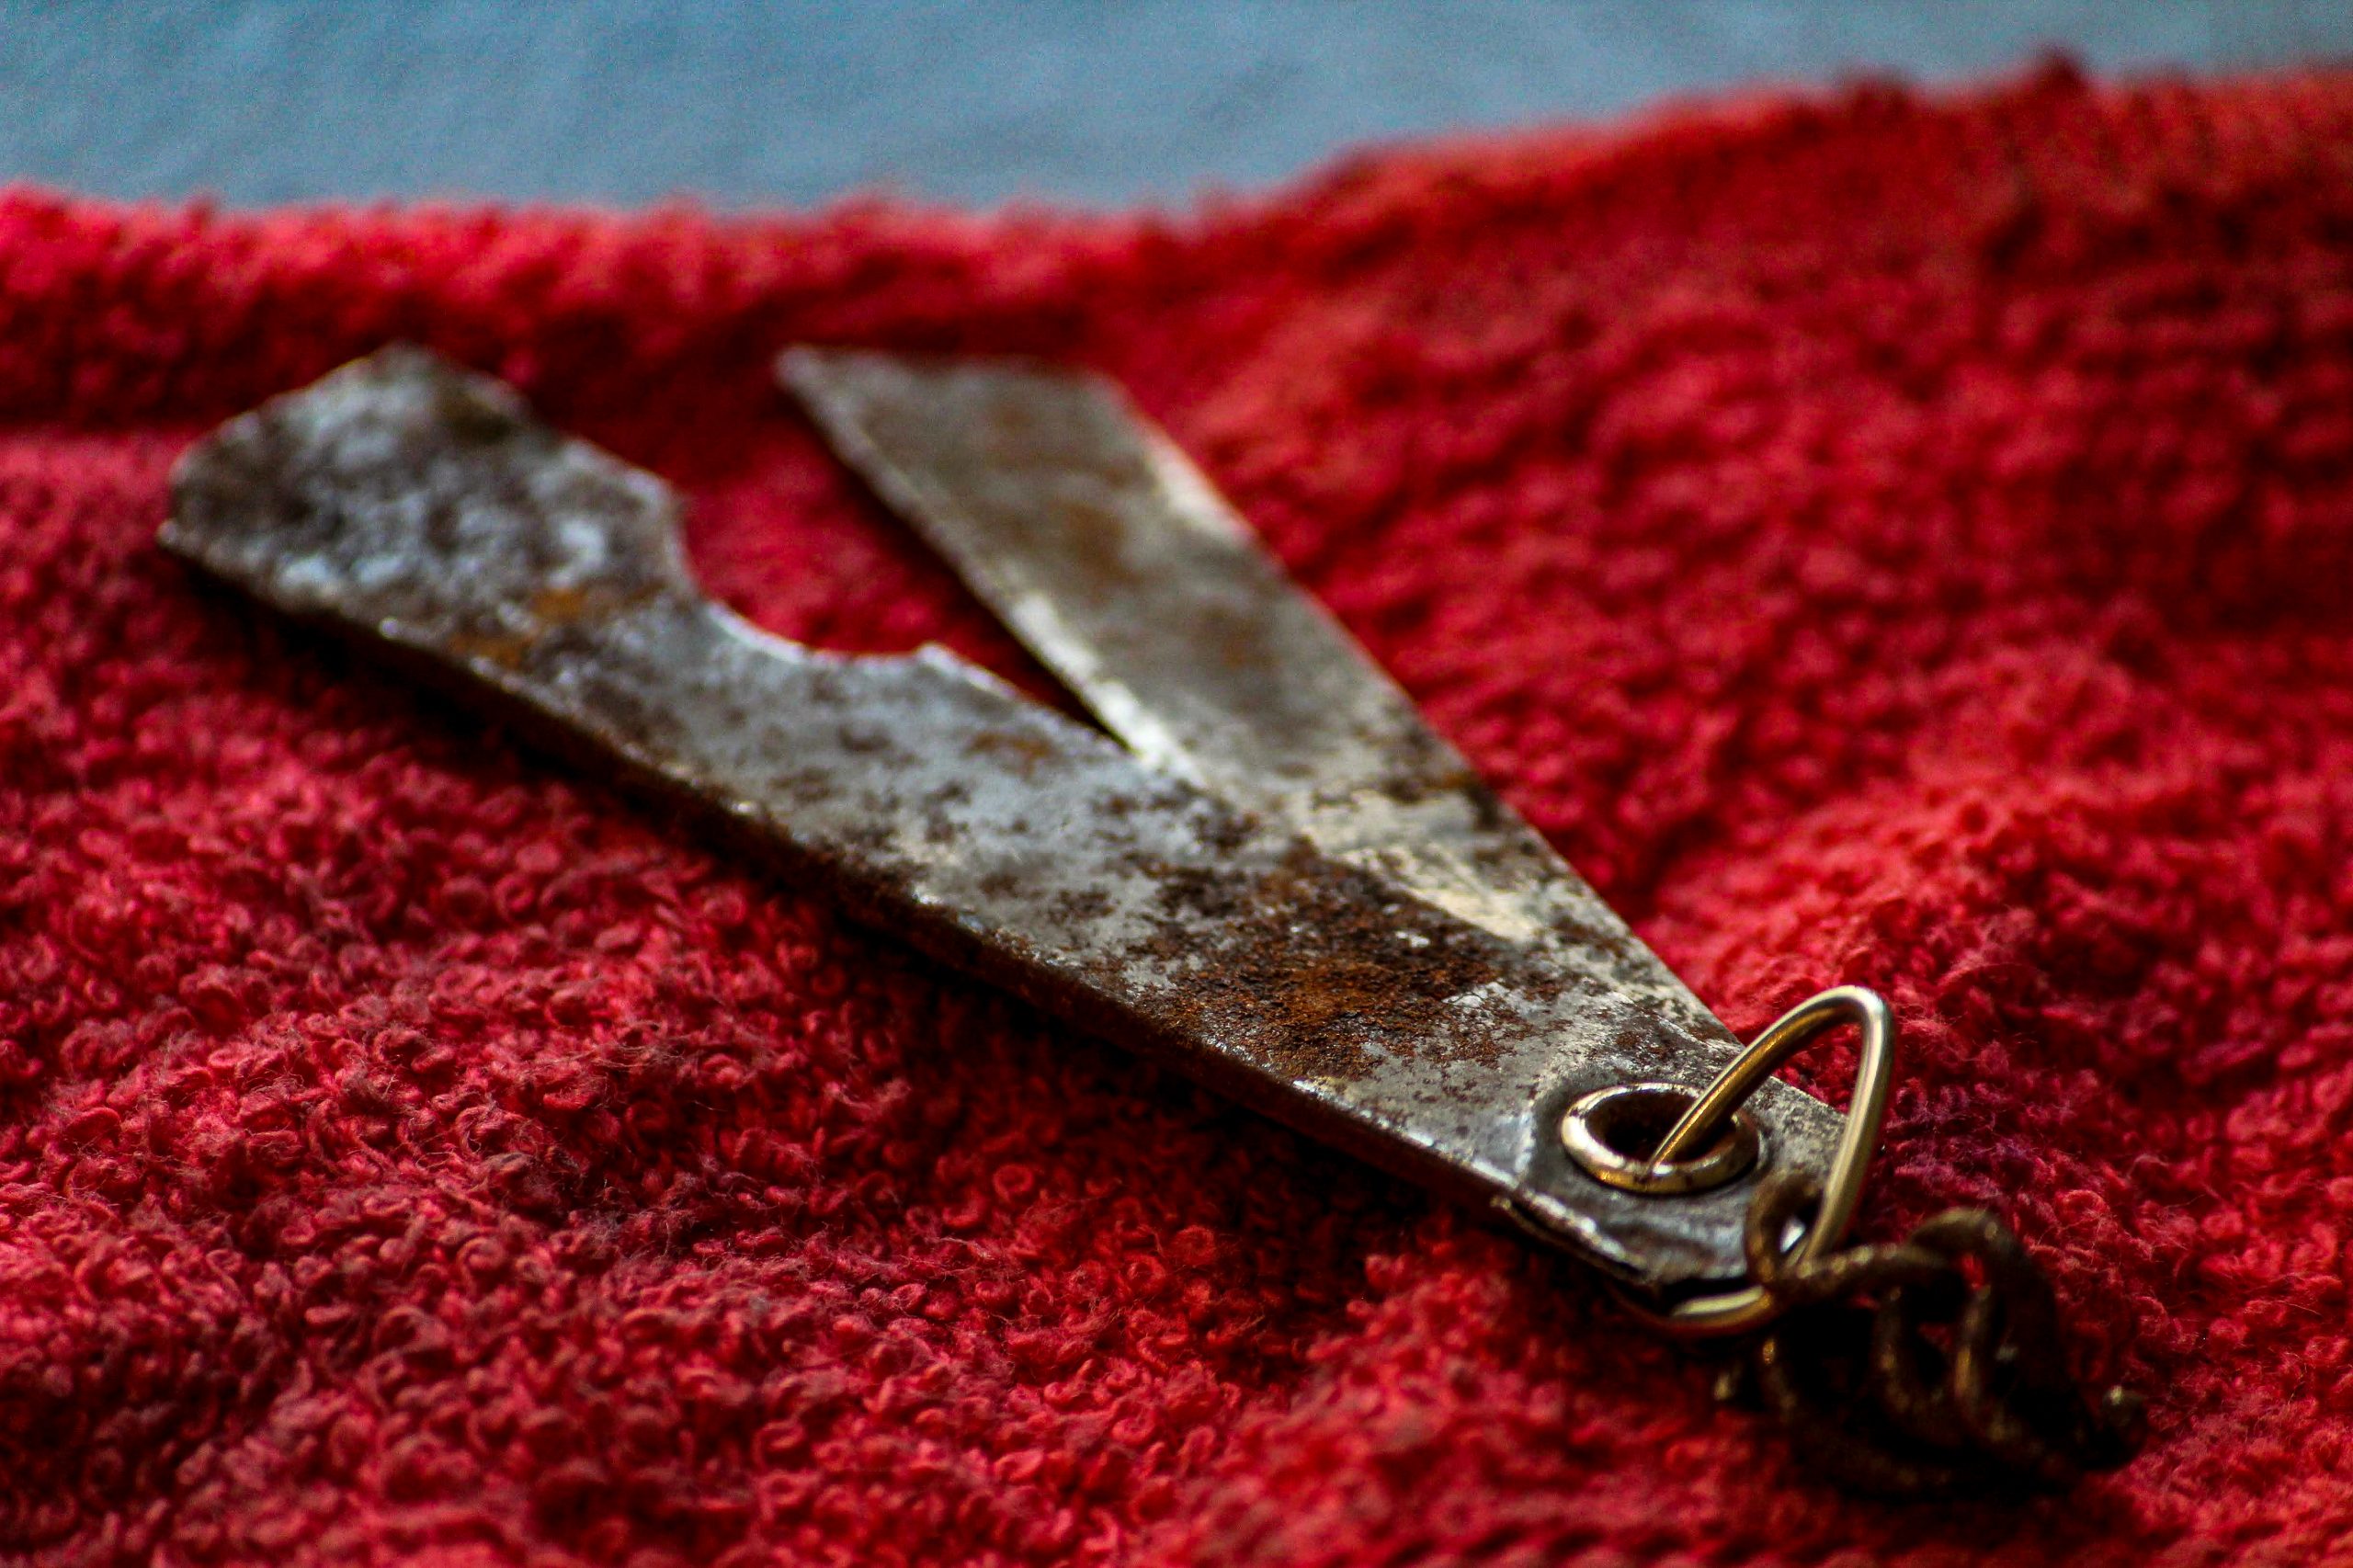 An old cutter blade